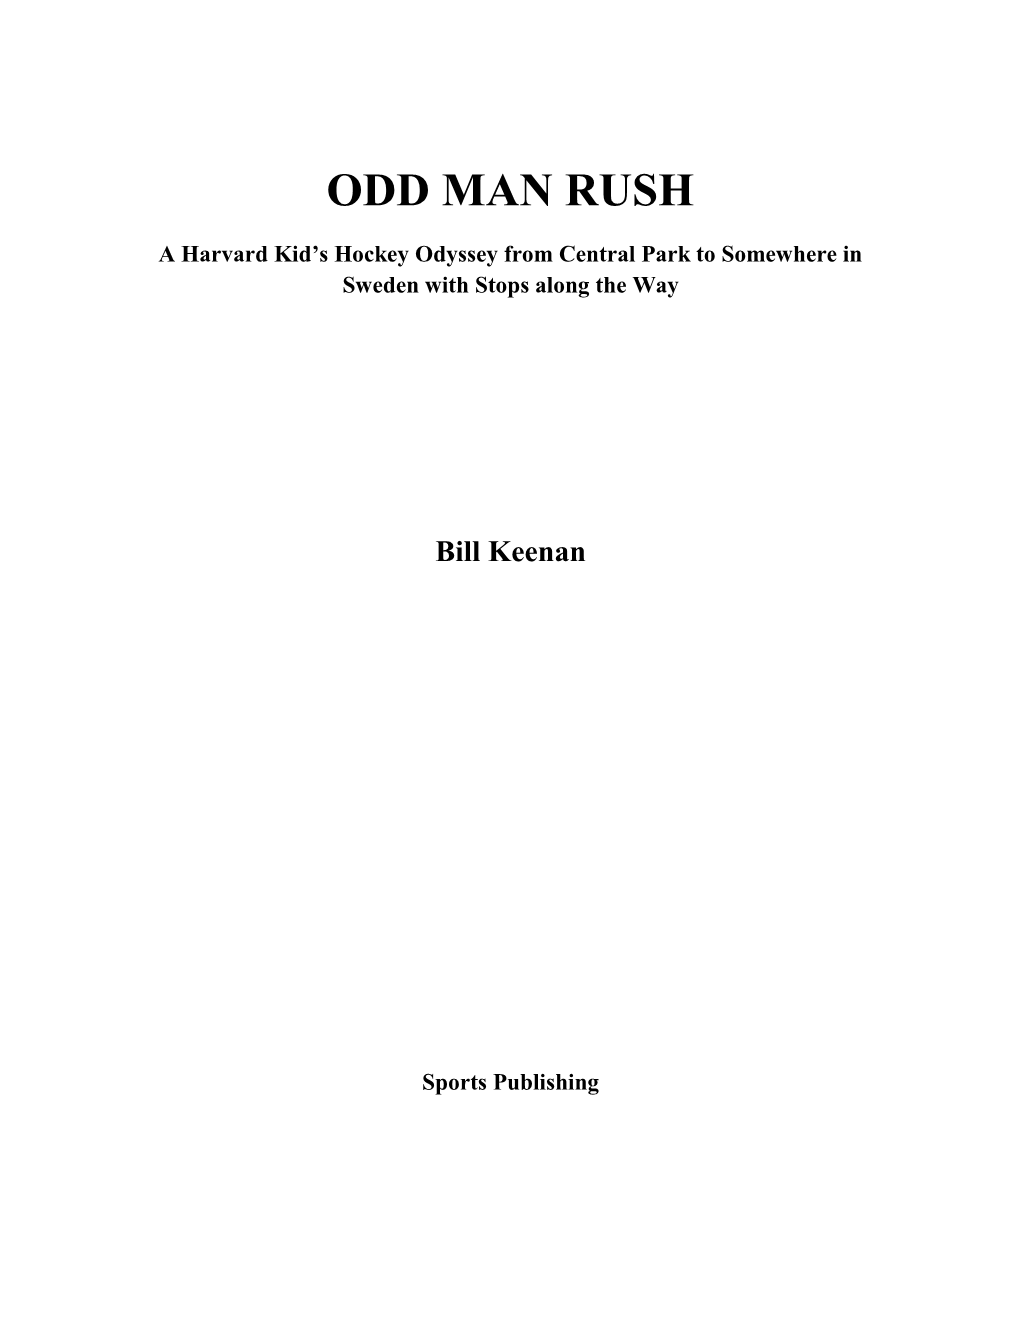 Odd Man Rush